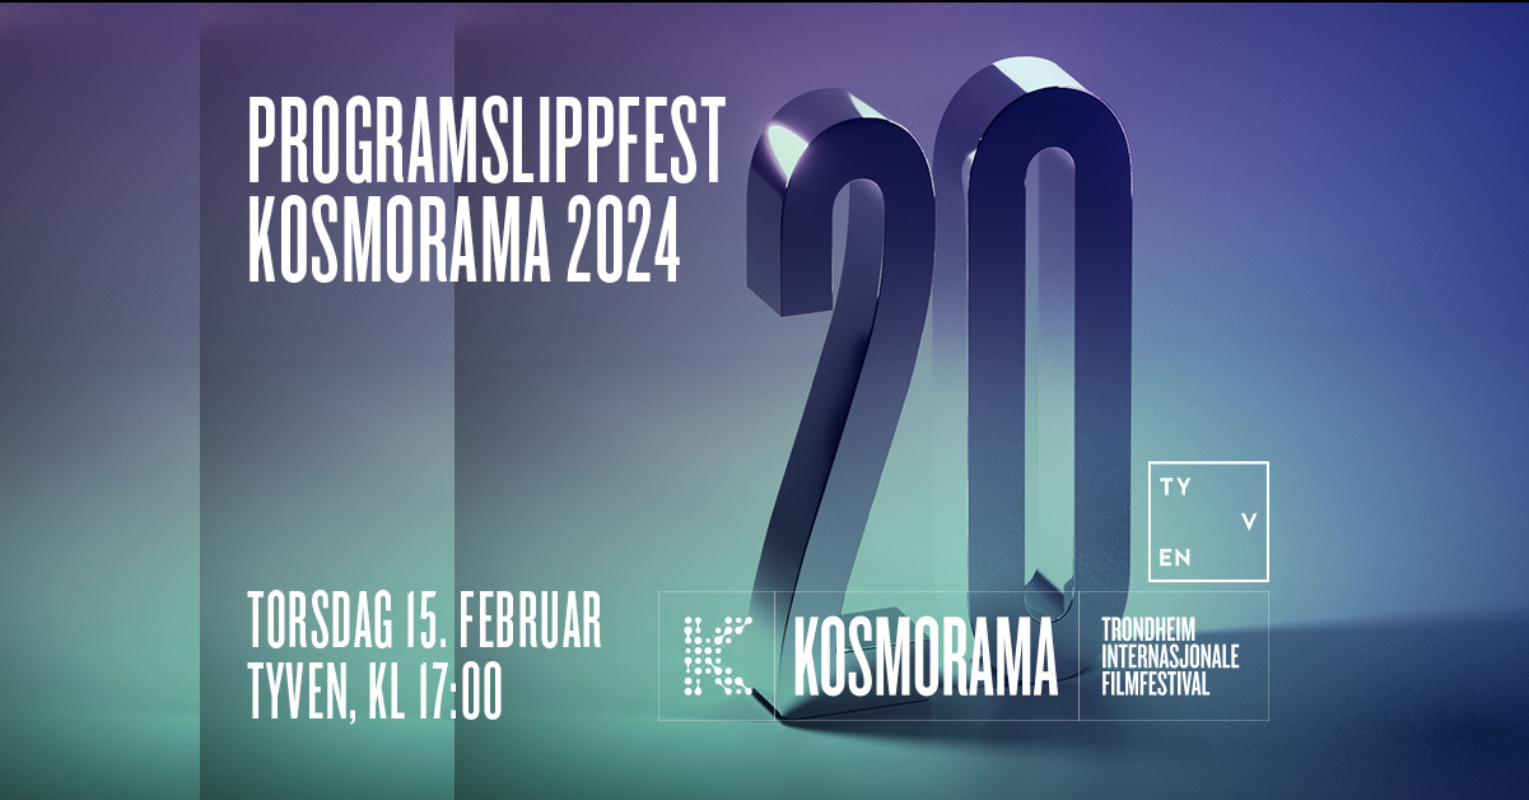 Programslippfest Kosmorama 2024 // TYVEN // 15. februar